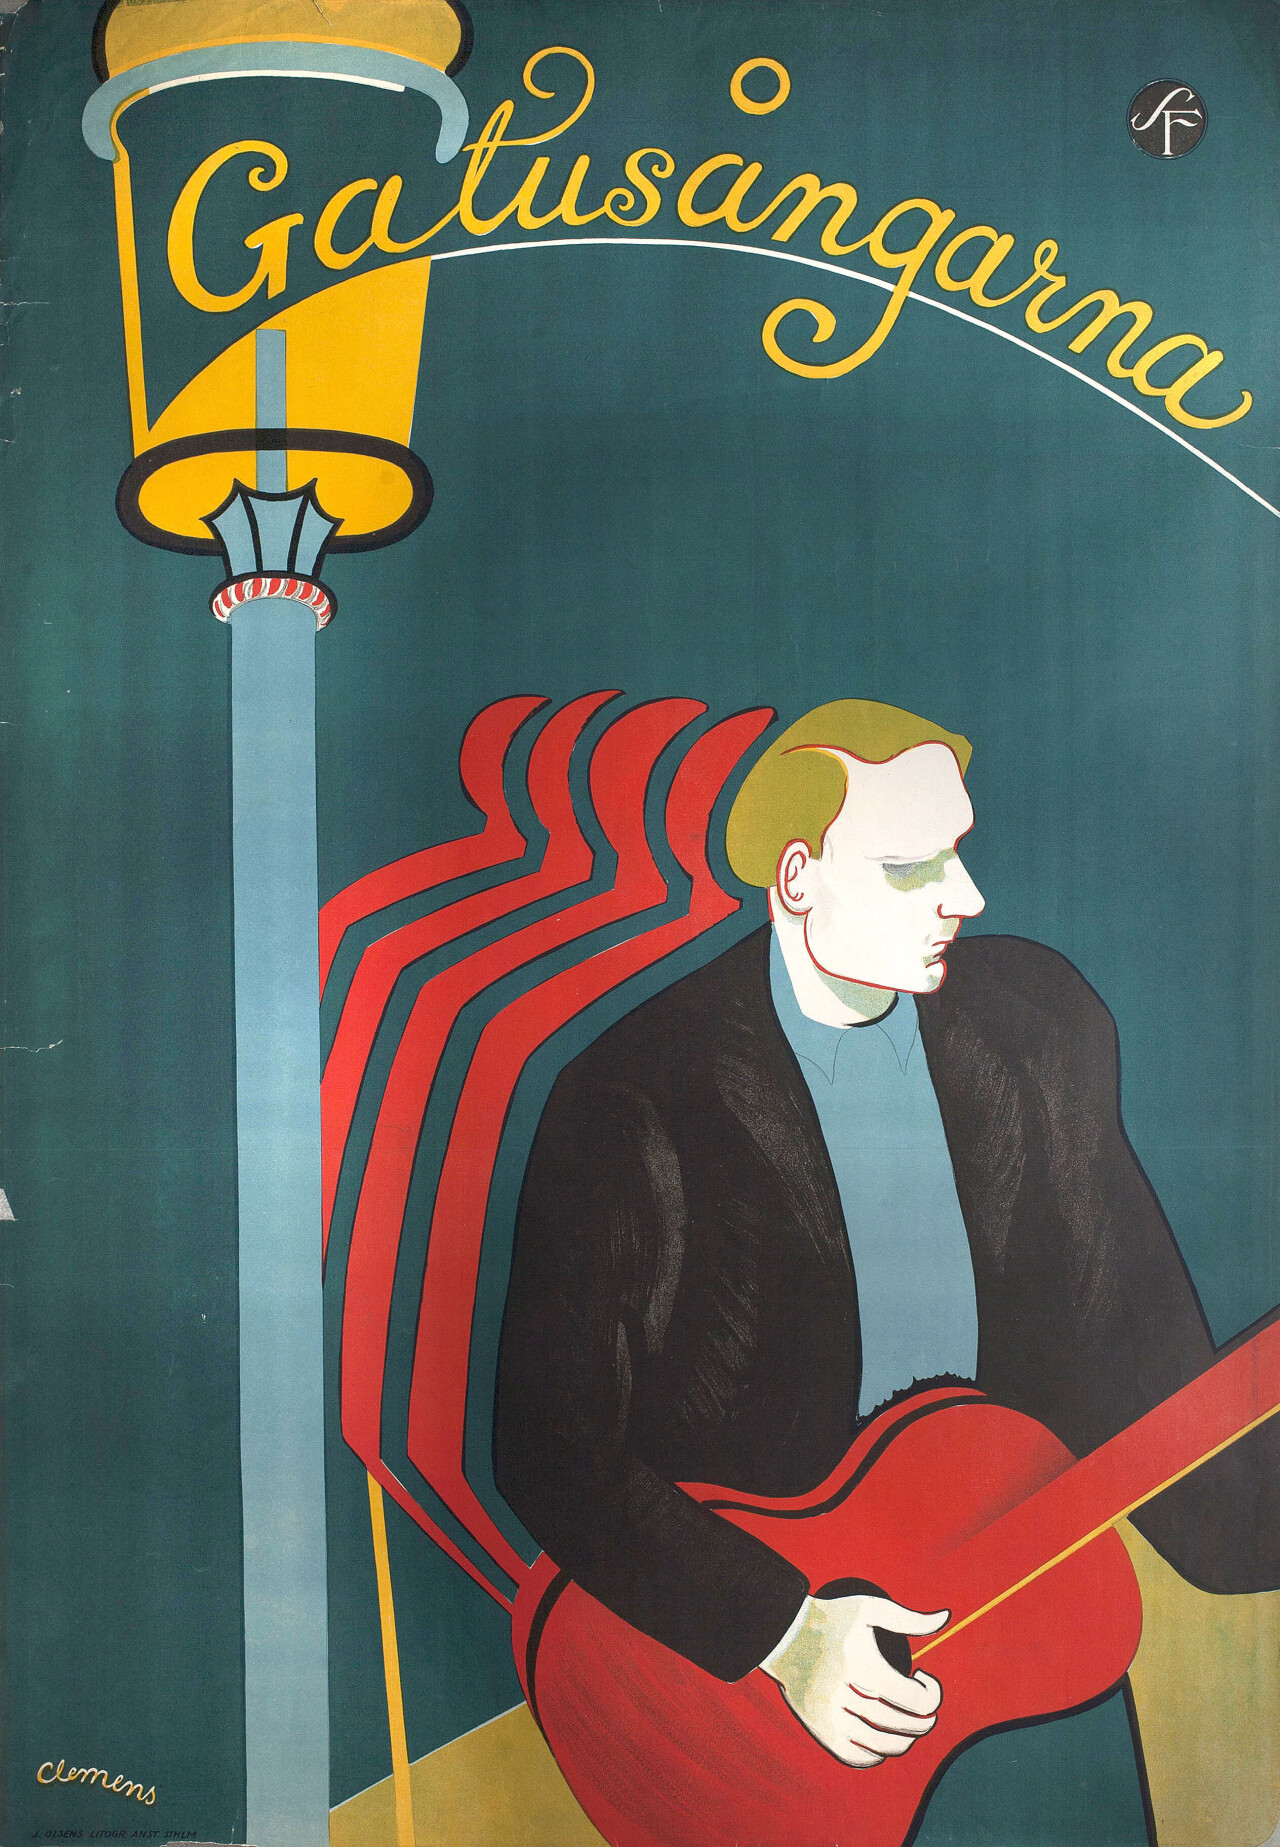 Уличная песня (The Street Song, 1931), режиссёр Лупу Пик, шведский постер к фильму, автор Клеменс (графический дизайн, 1931 год)